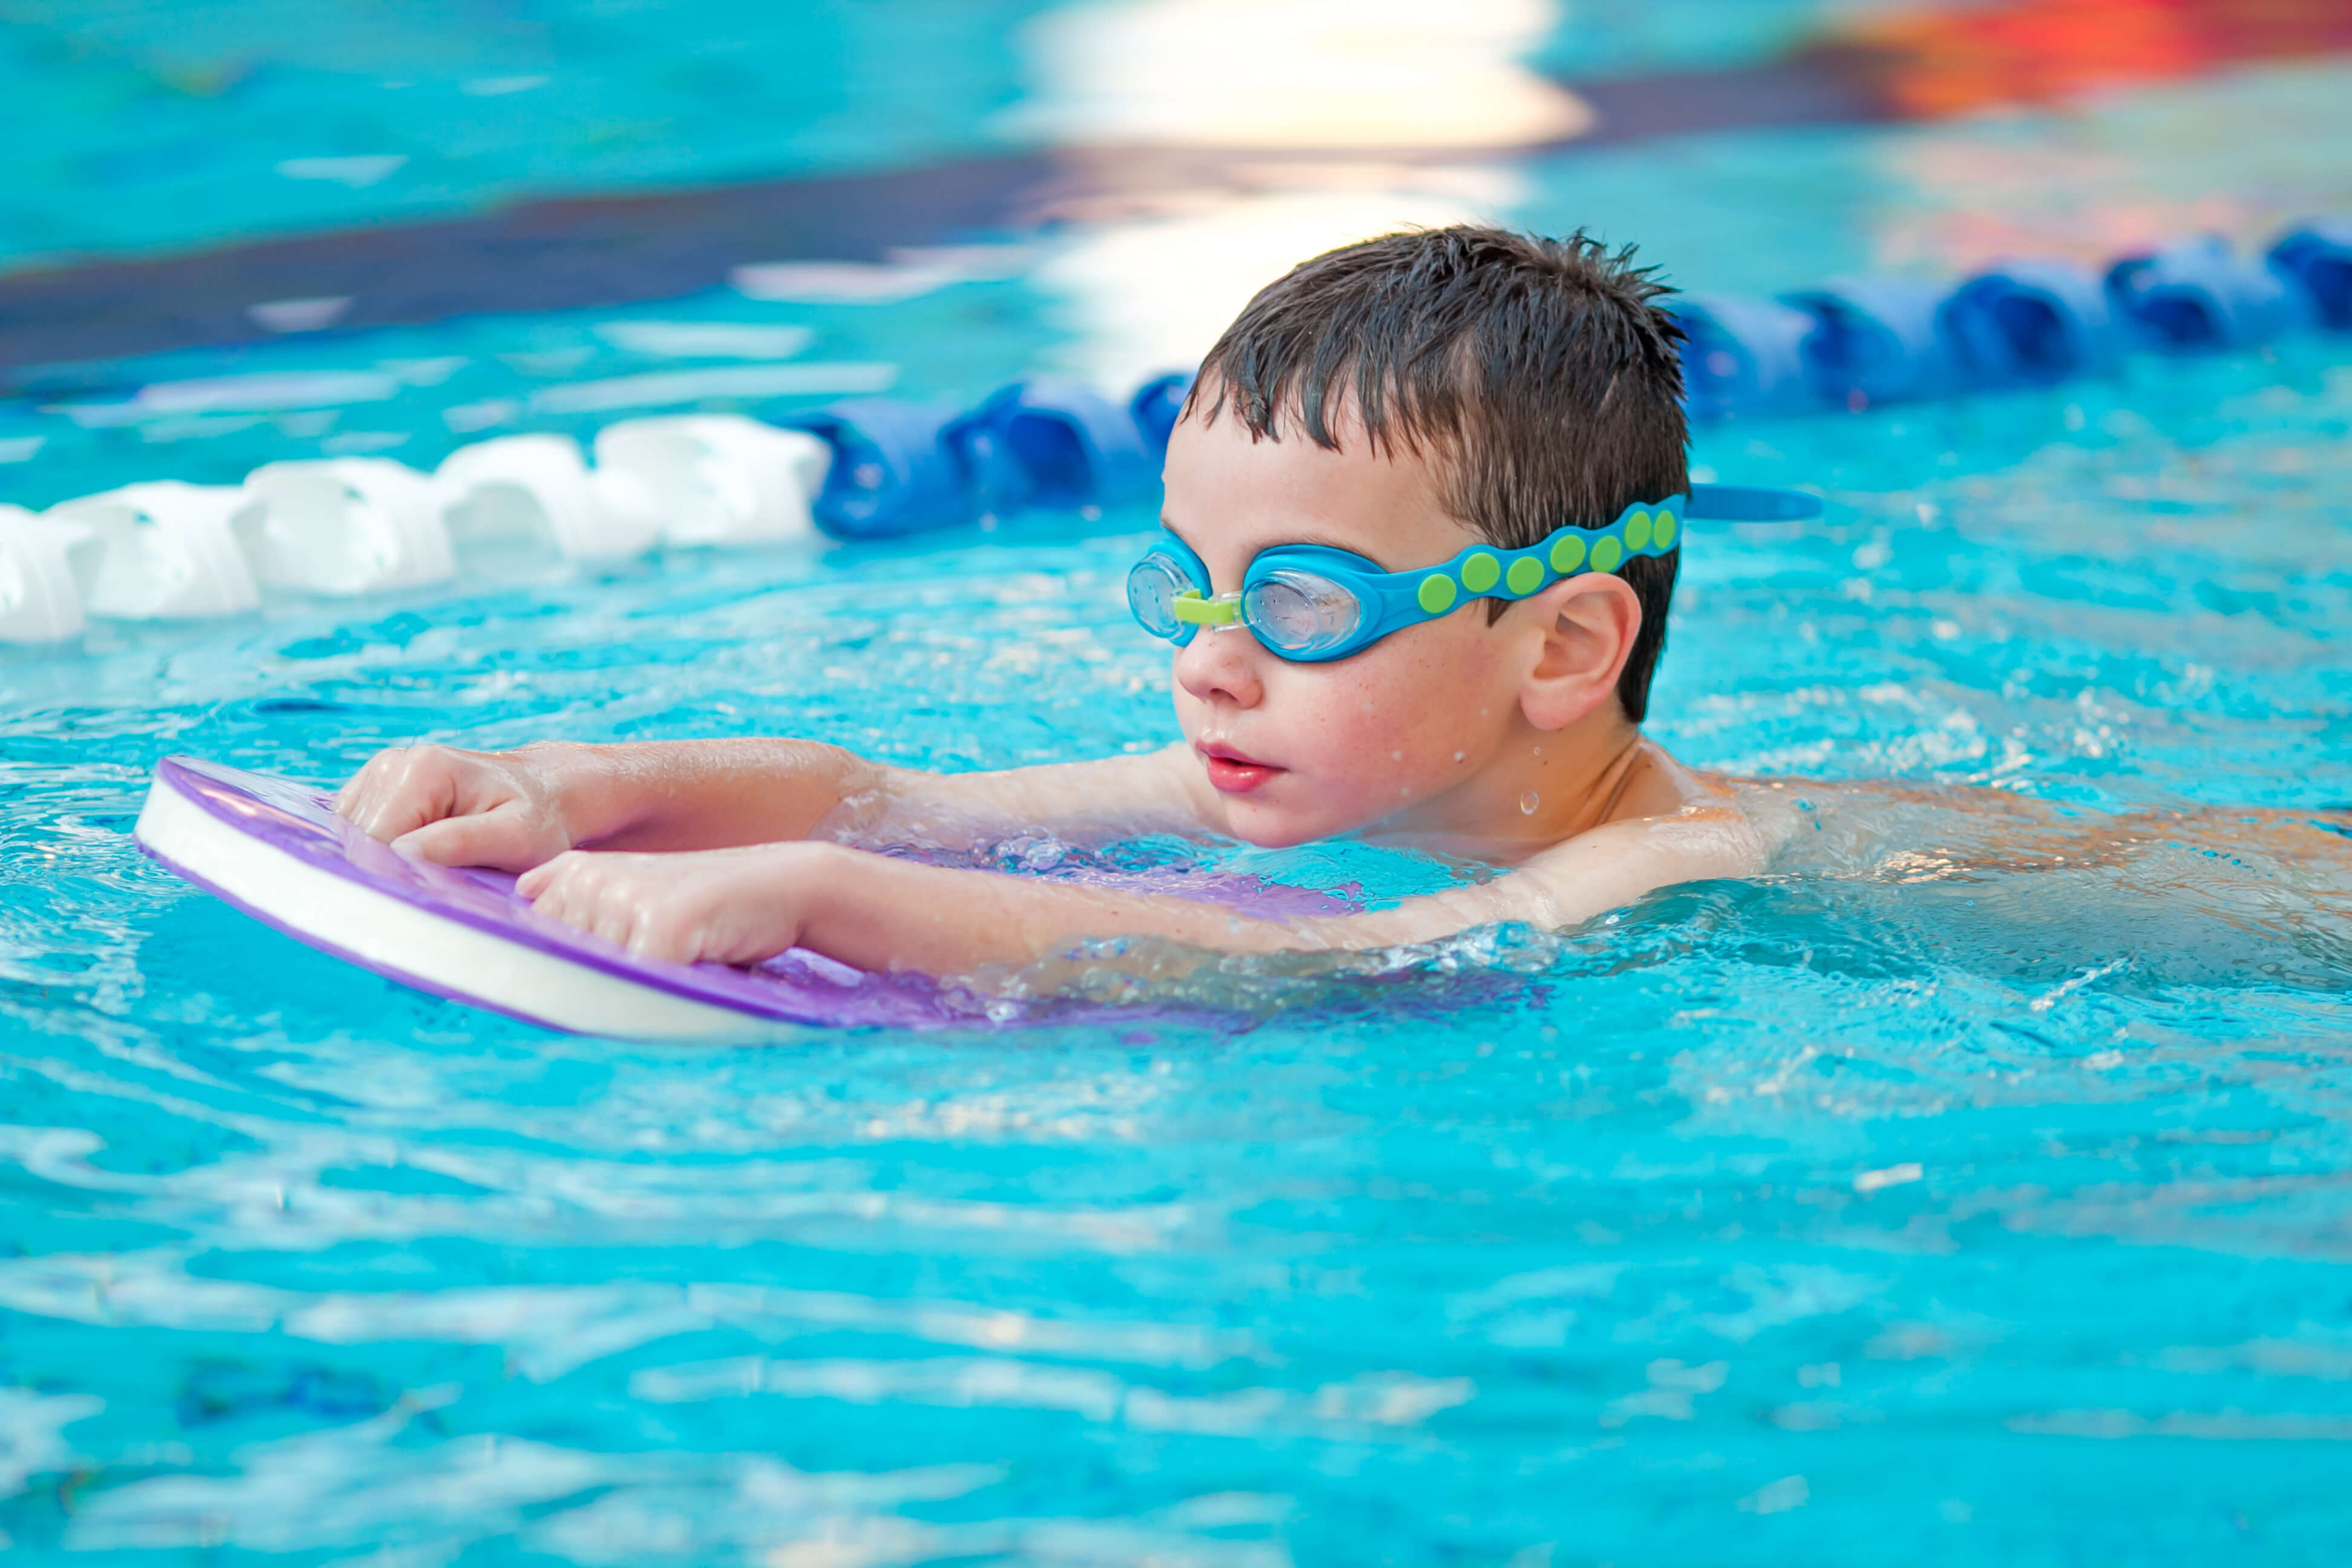 Swimming activities. Дети в бассейне. Плавание в бассейне дети. Мальчишки в бассейне. Дети плавают в бассейне.